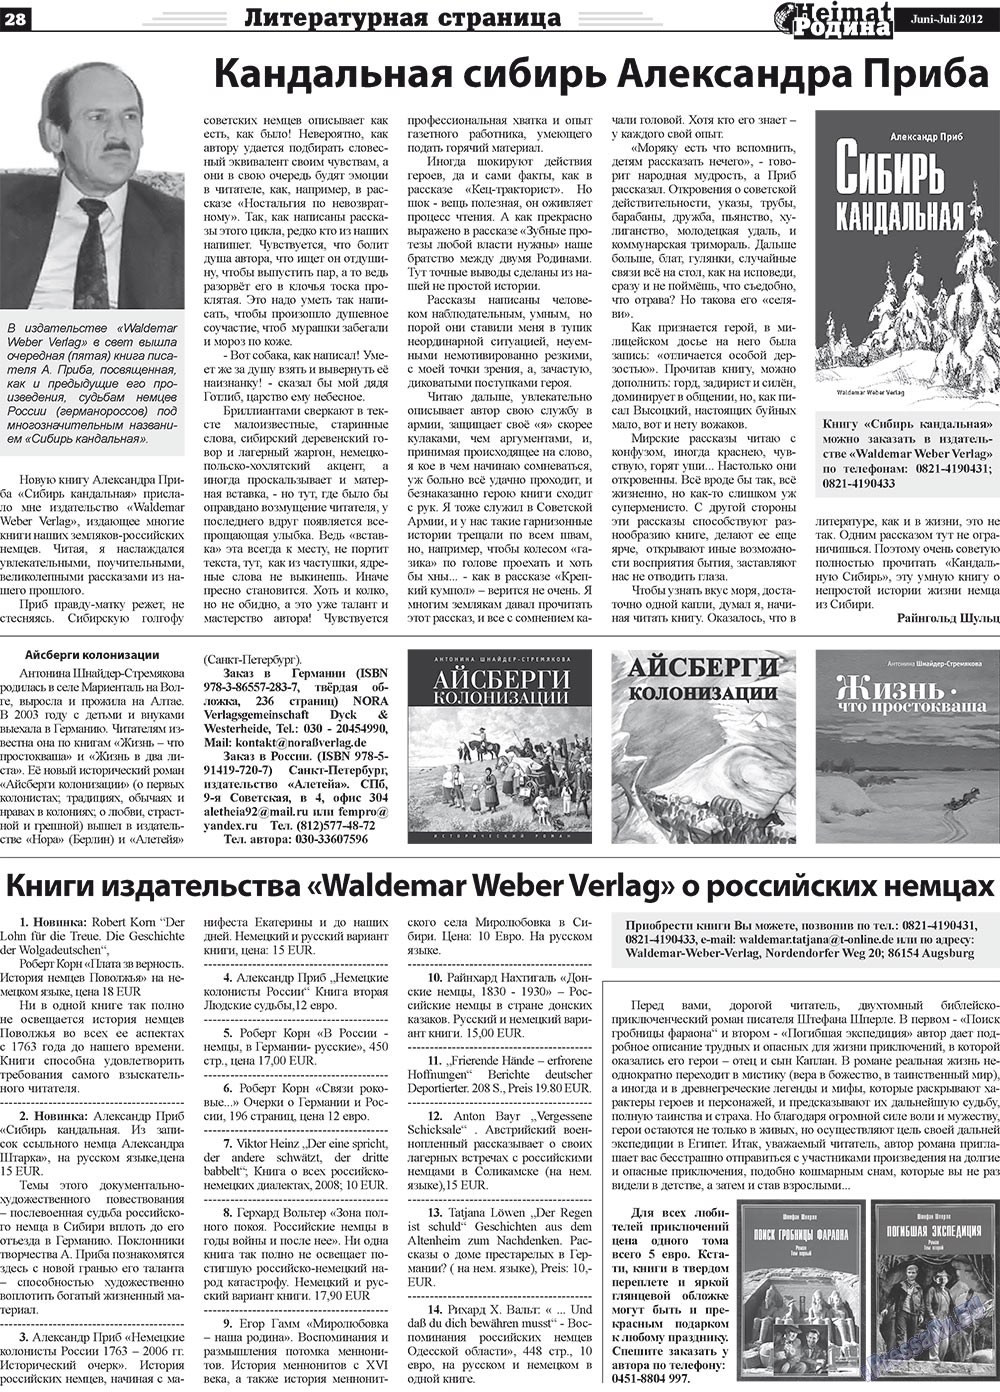 Heimat-Родина (газета). 2012 год, номер 5, стр. 28